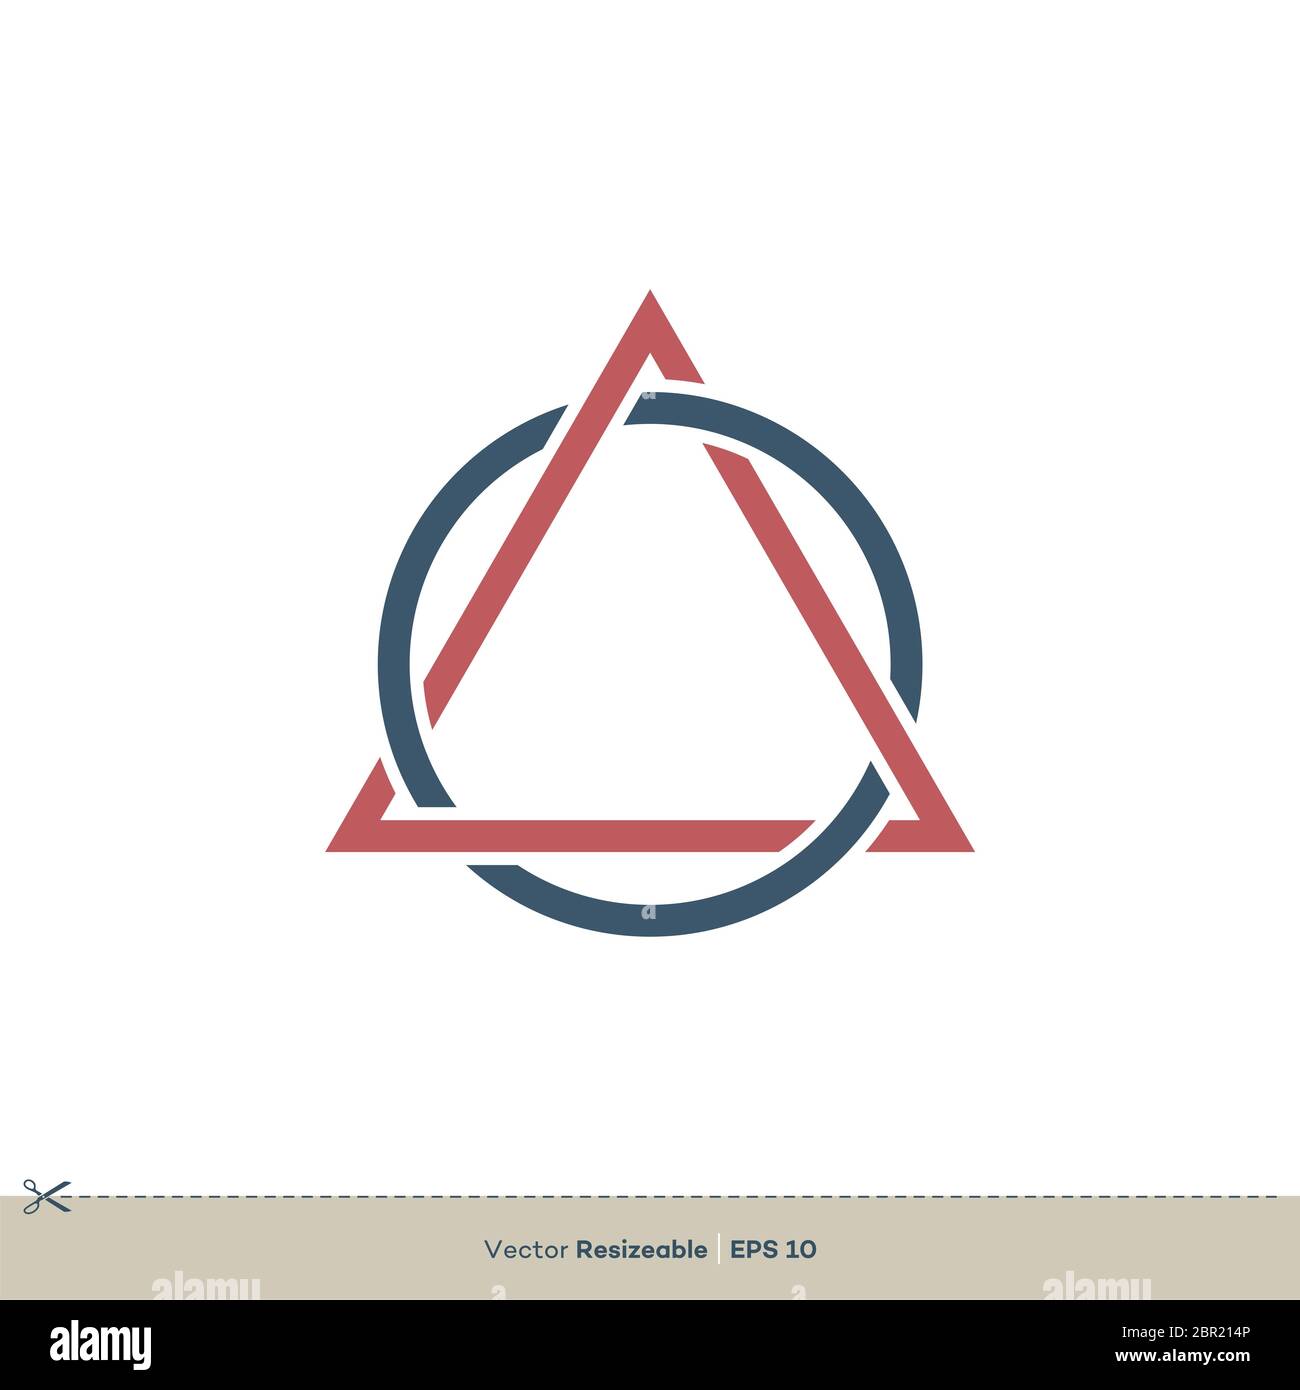 Disegno di illustrazione del modello di logo vettoriale triangolare e circolare Foto Stock